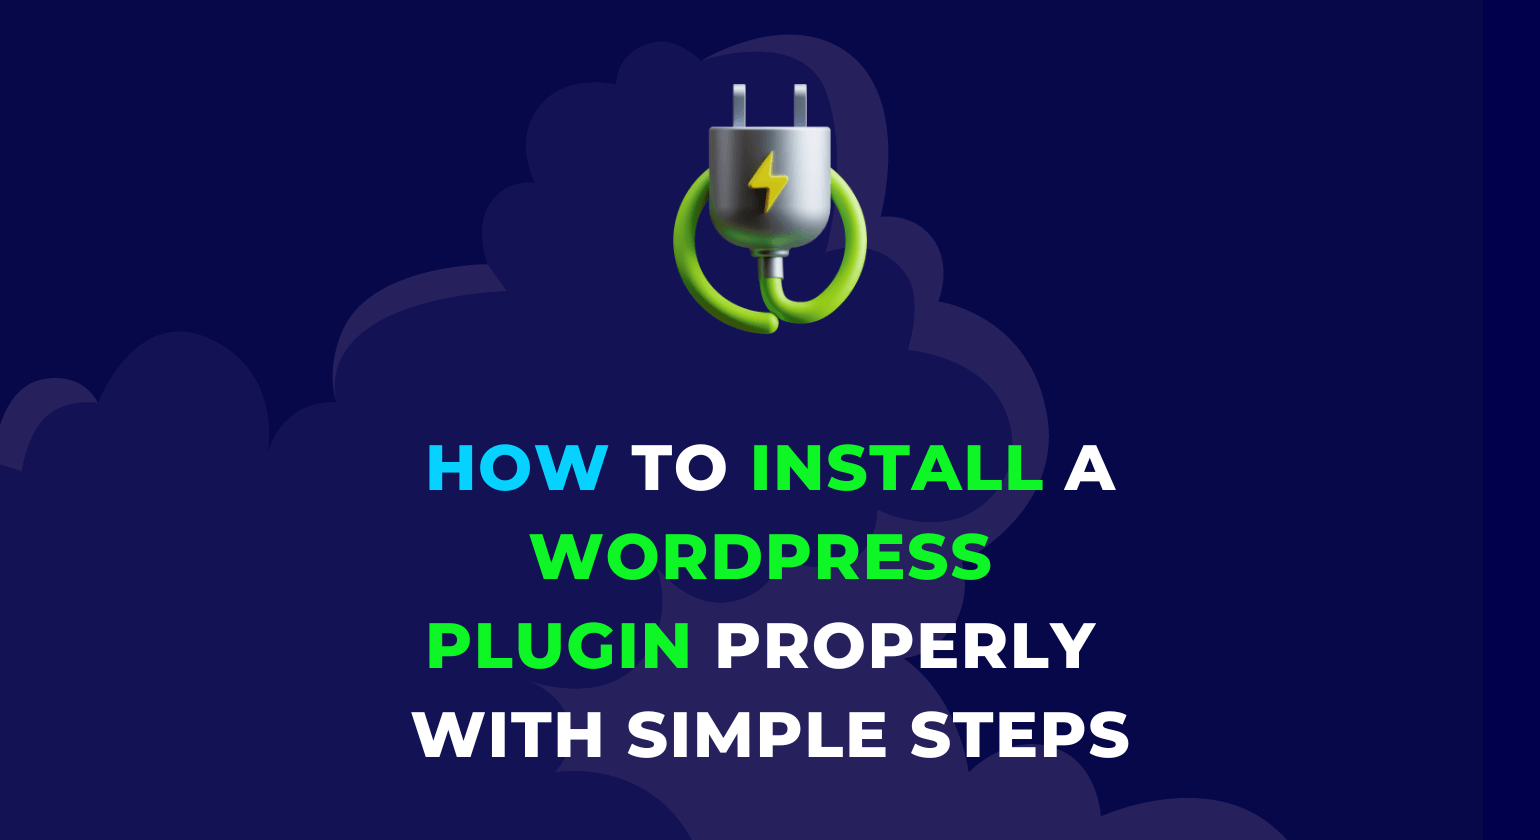 Install a WordPress Plugin